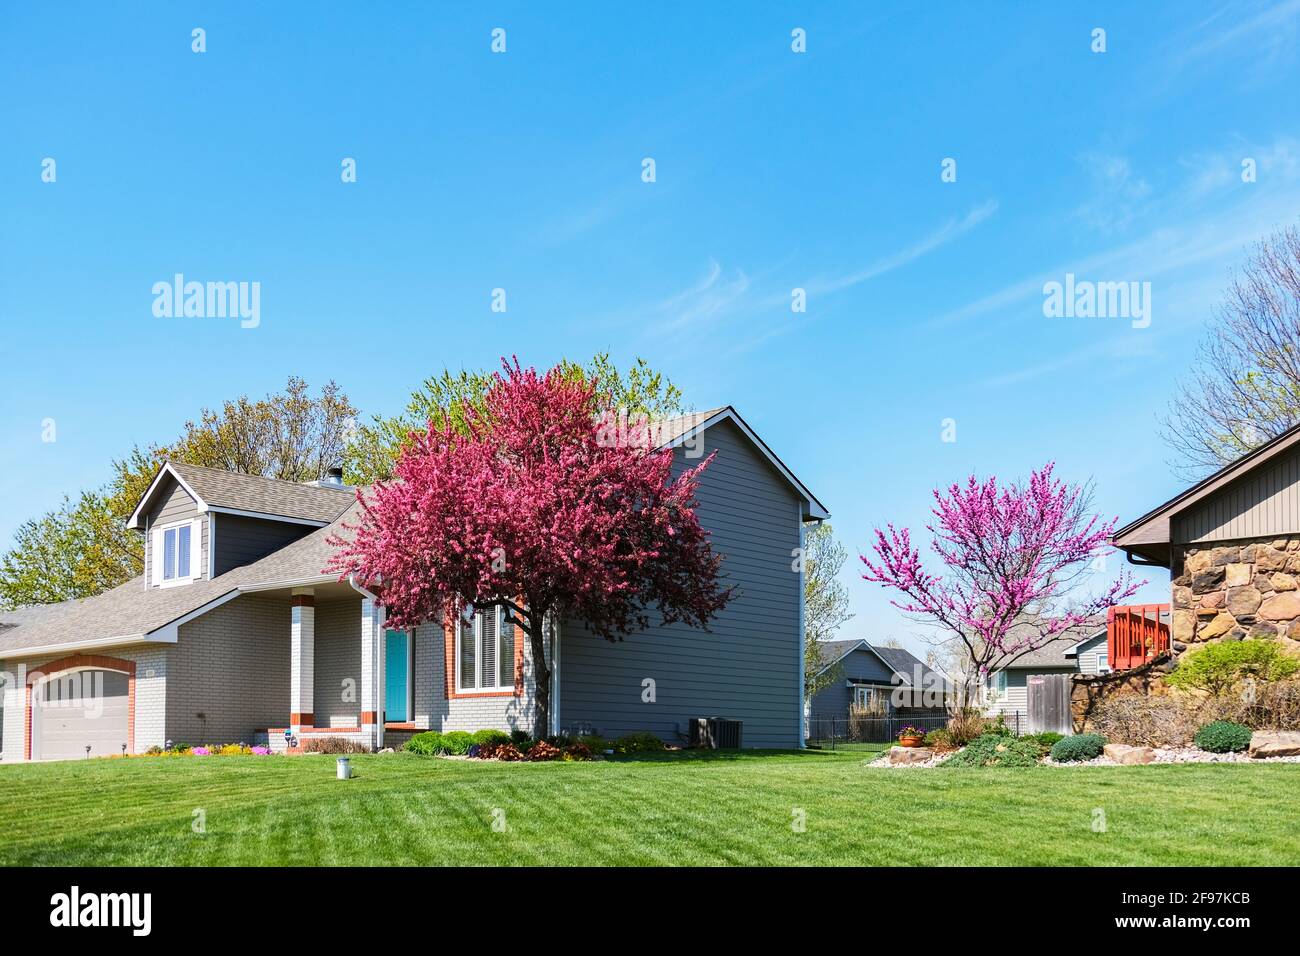 Écrevisse à fleurs, Malus Prairiefire ou Malus Prairifire, devant une maison avec pelouse verte et ciel bleu. Banque D'Images